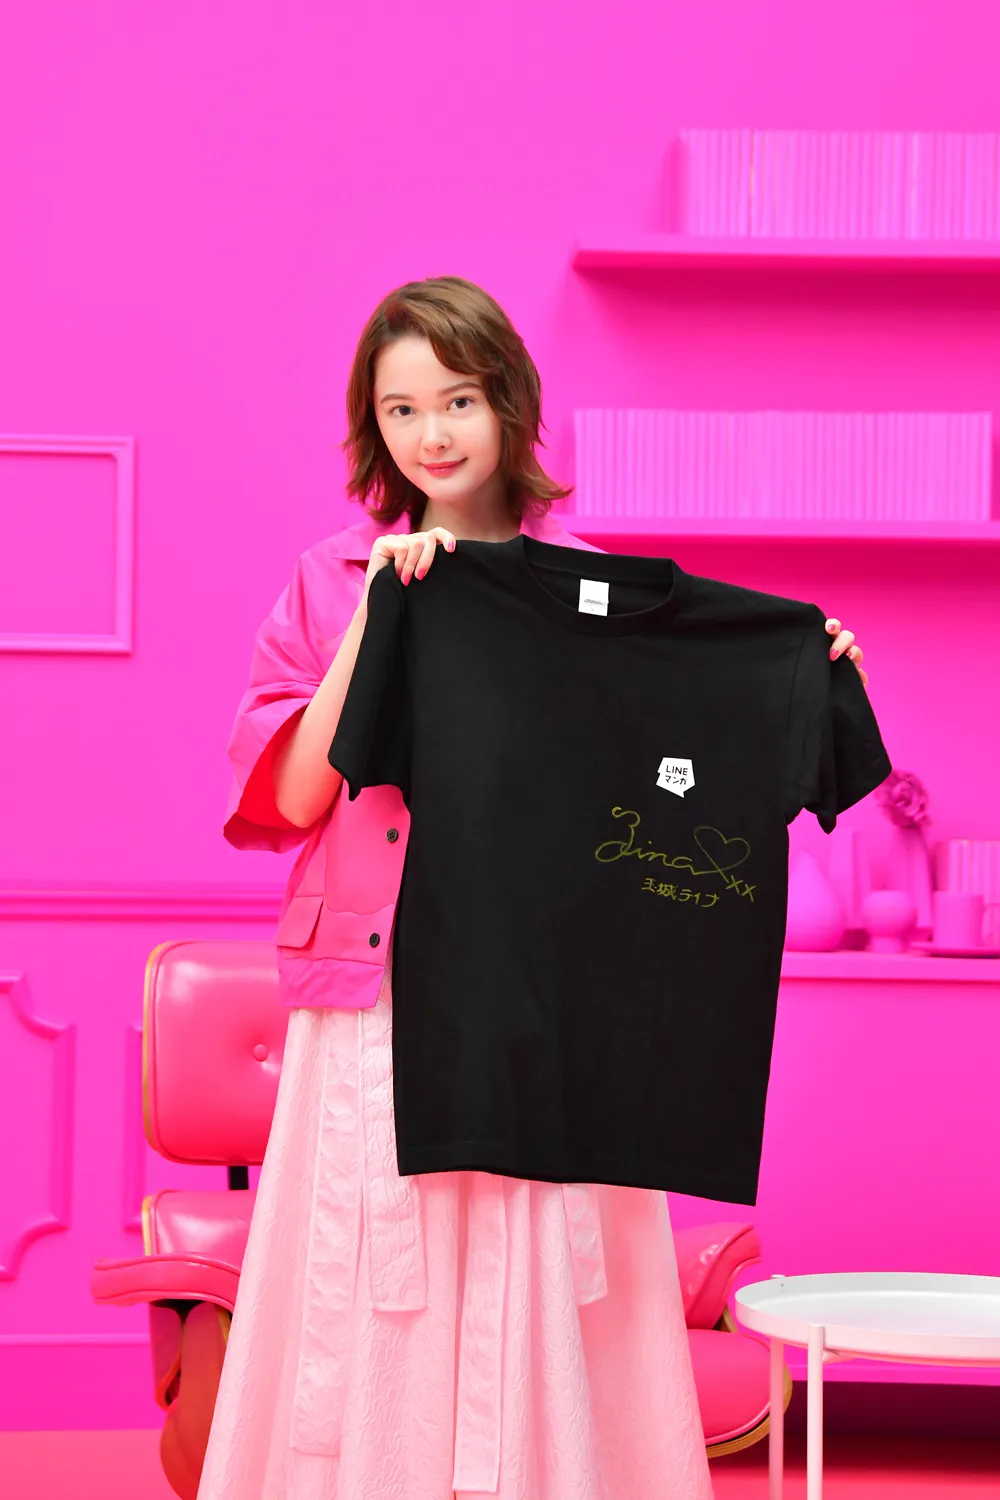 「Twitter プレゼントキャンペーン」では志尊淳、玉城ティナの「直筆サイン入りLINEマンガ オリジナルTシャツ」が抽選でそれぞれ2人にプレゼントされる